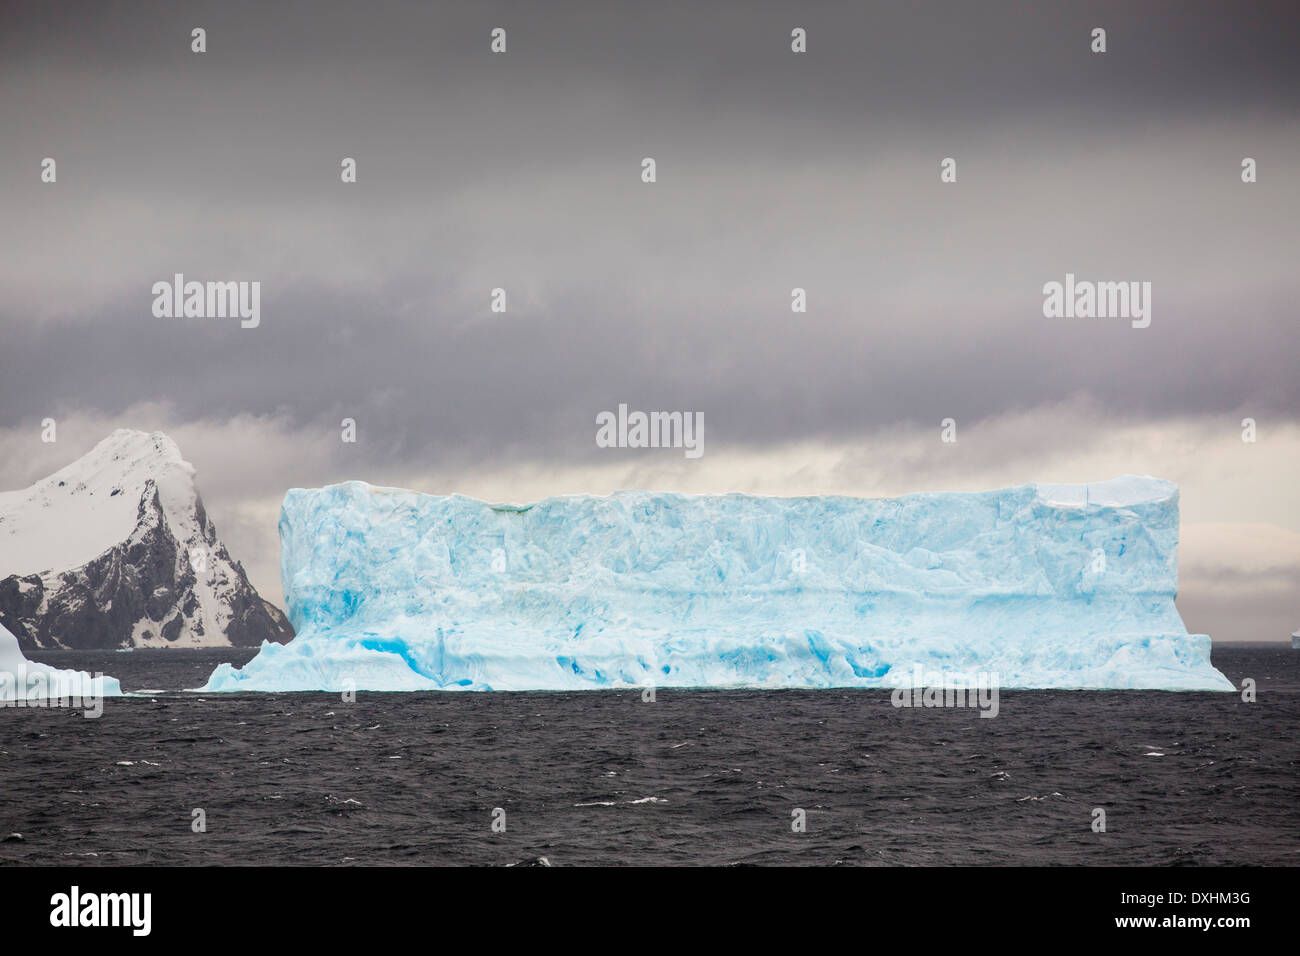 Eisberge abseits der Süd-Orkney-Inseln, direkt an der antarktischen Halbinsel. Dieser Bereich ist eines der am schnellsten Erwärmung Gebiete Stockfoto